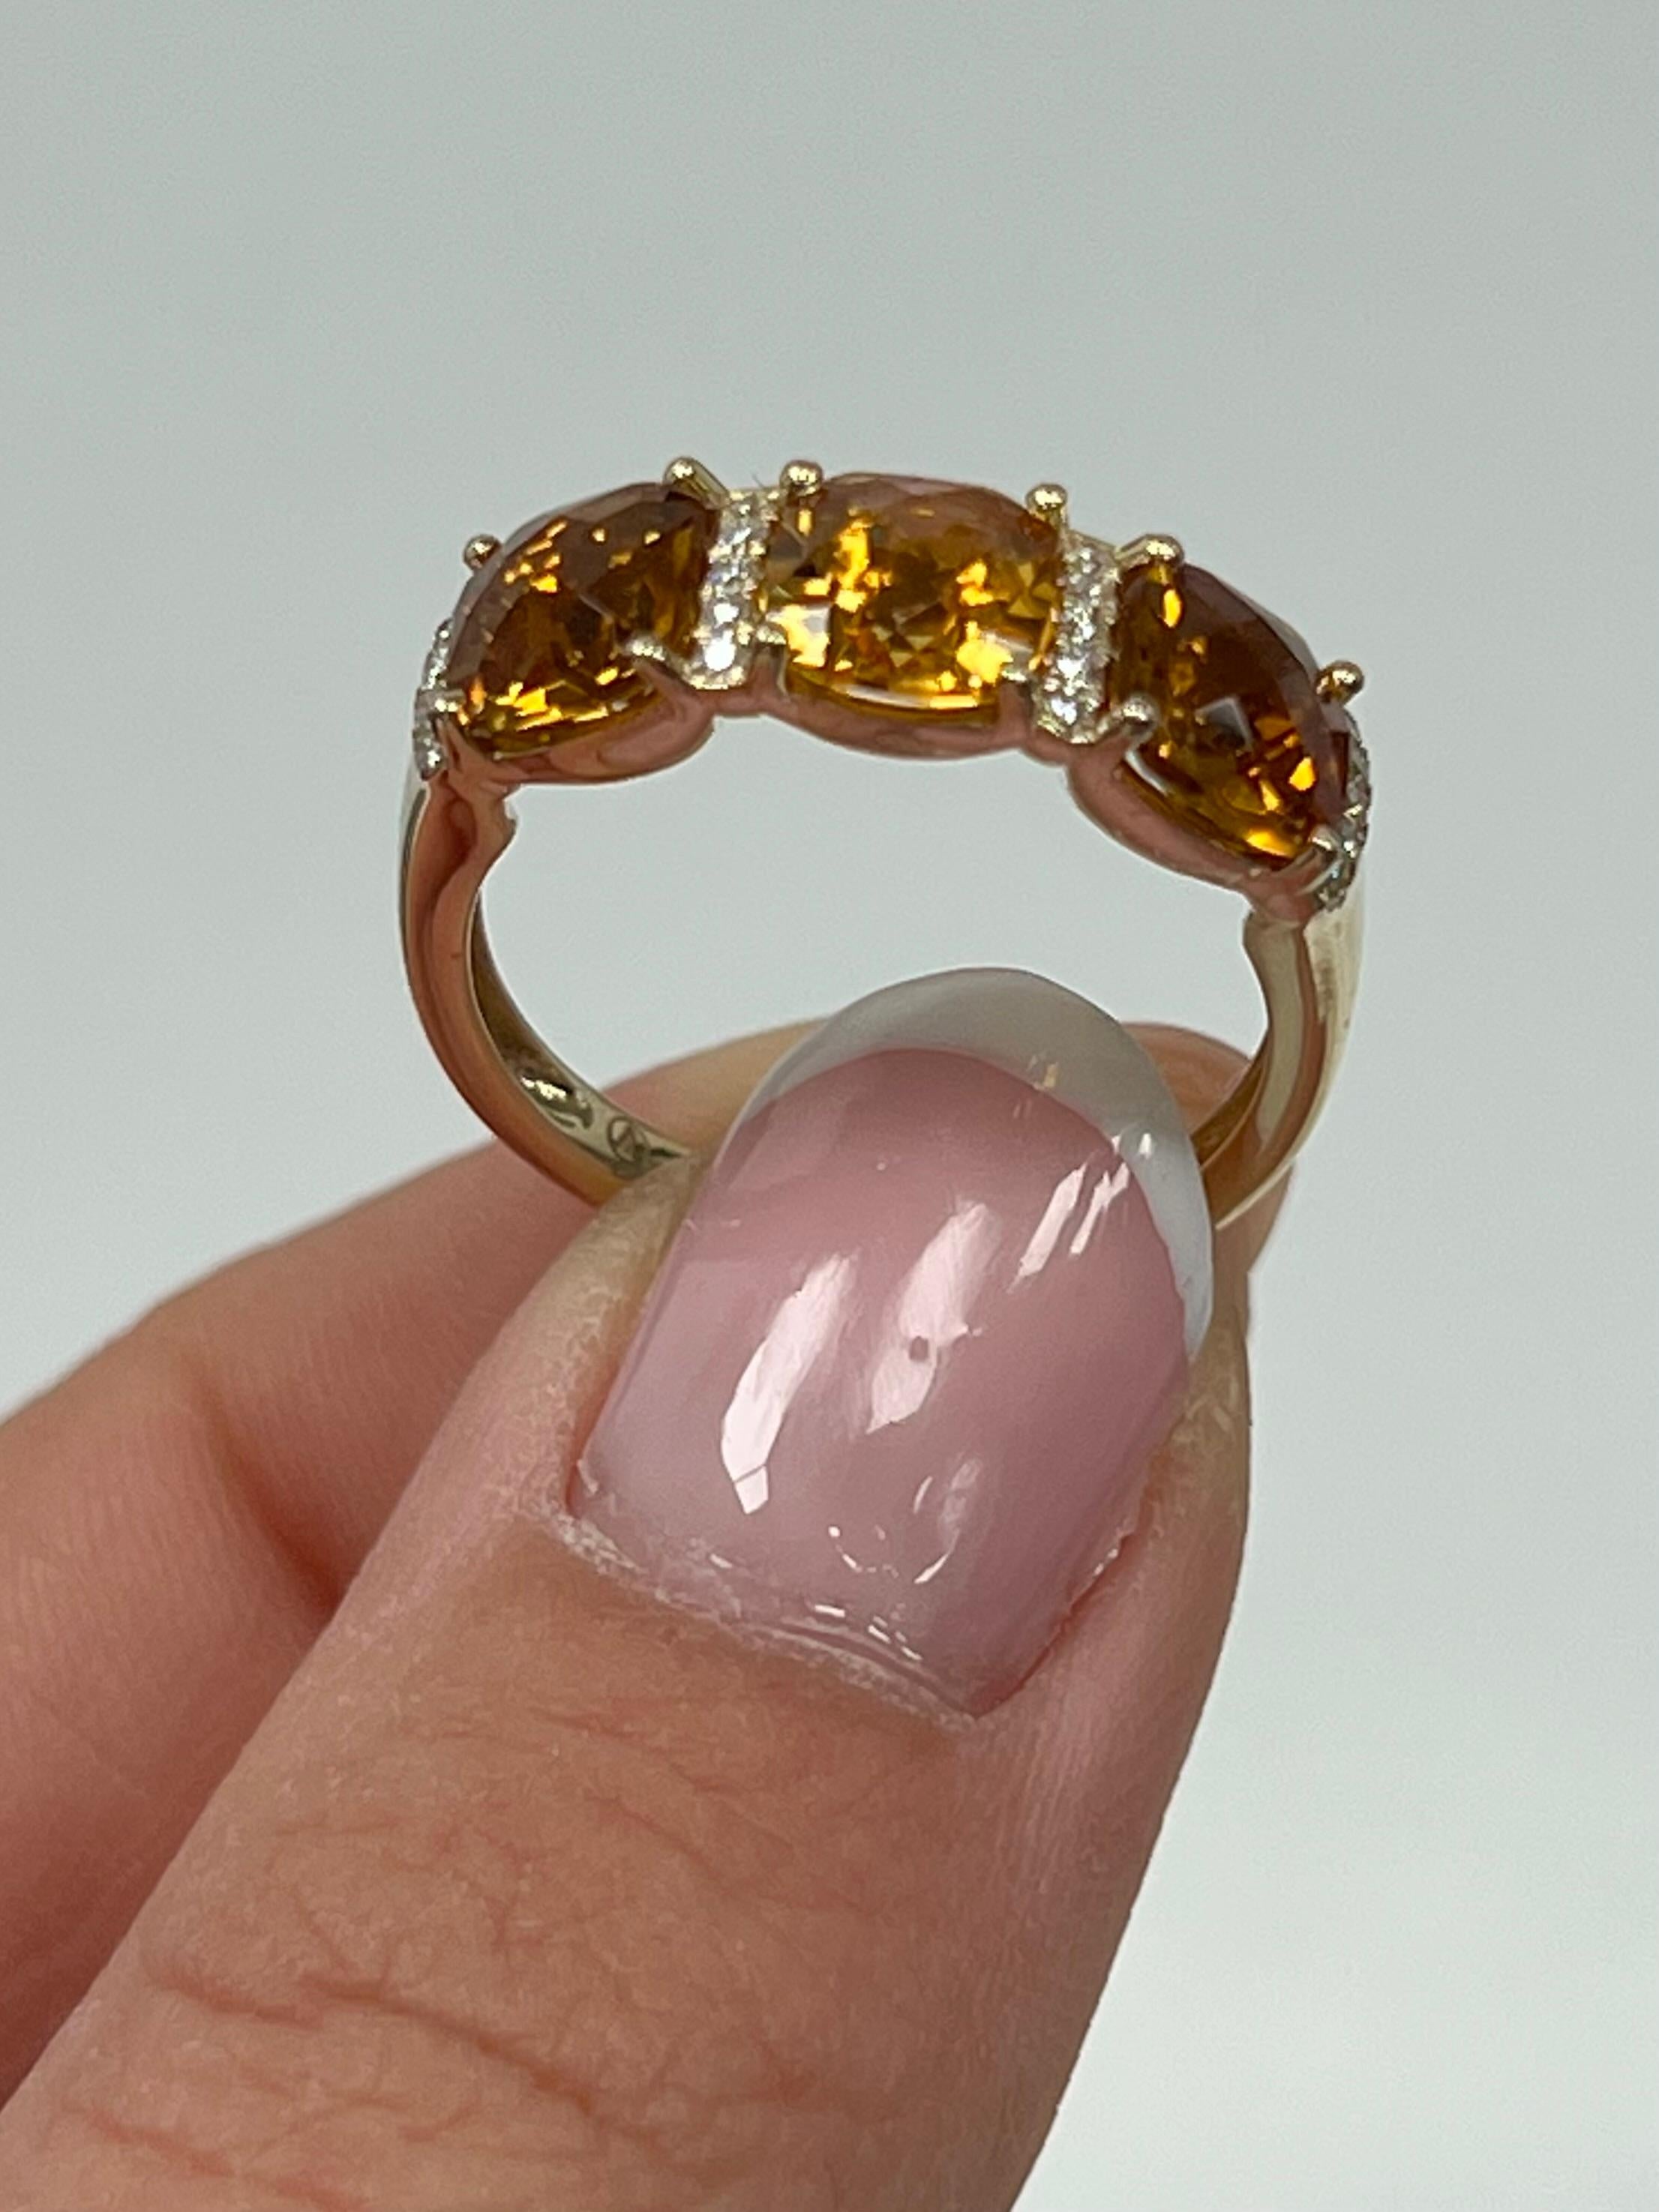 Emerald Cut 3 Stone Semi-Precious Ring For Sale